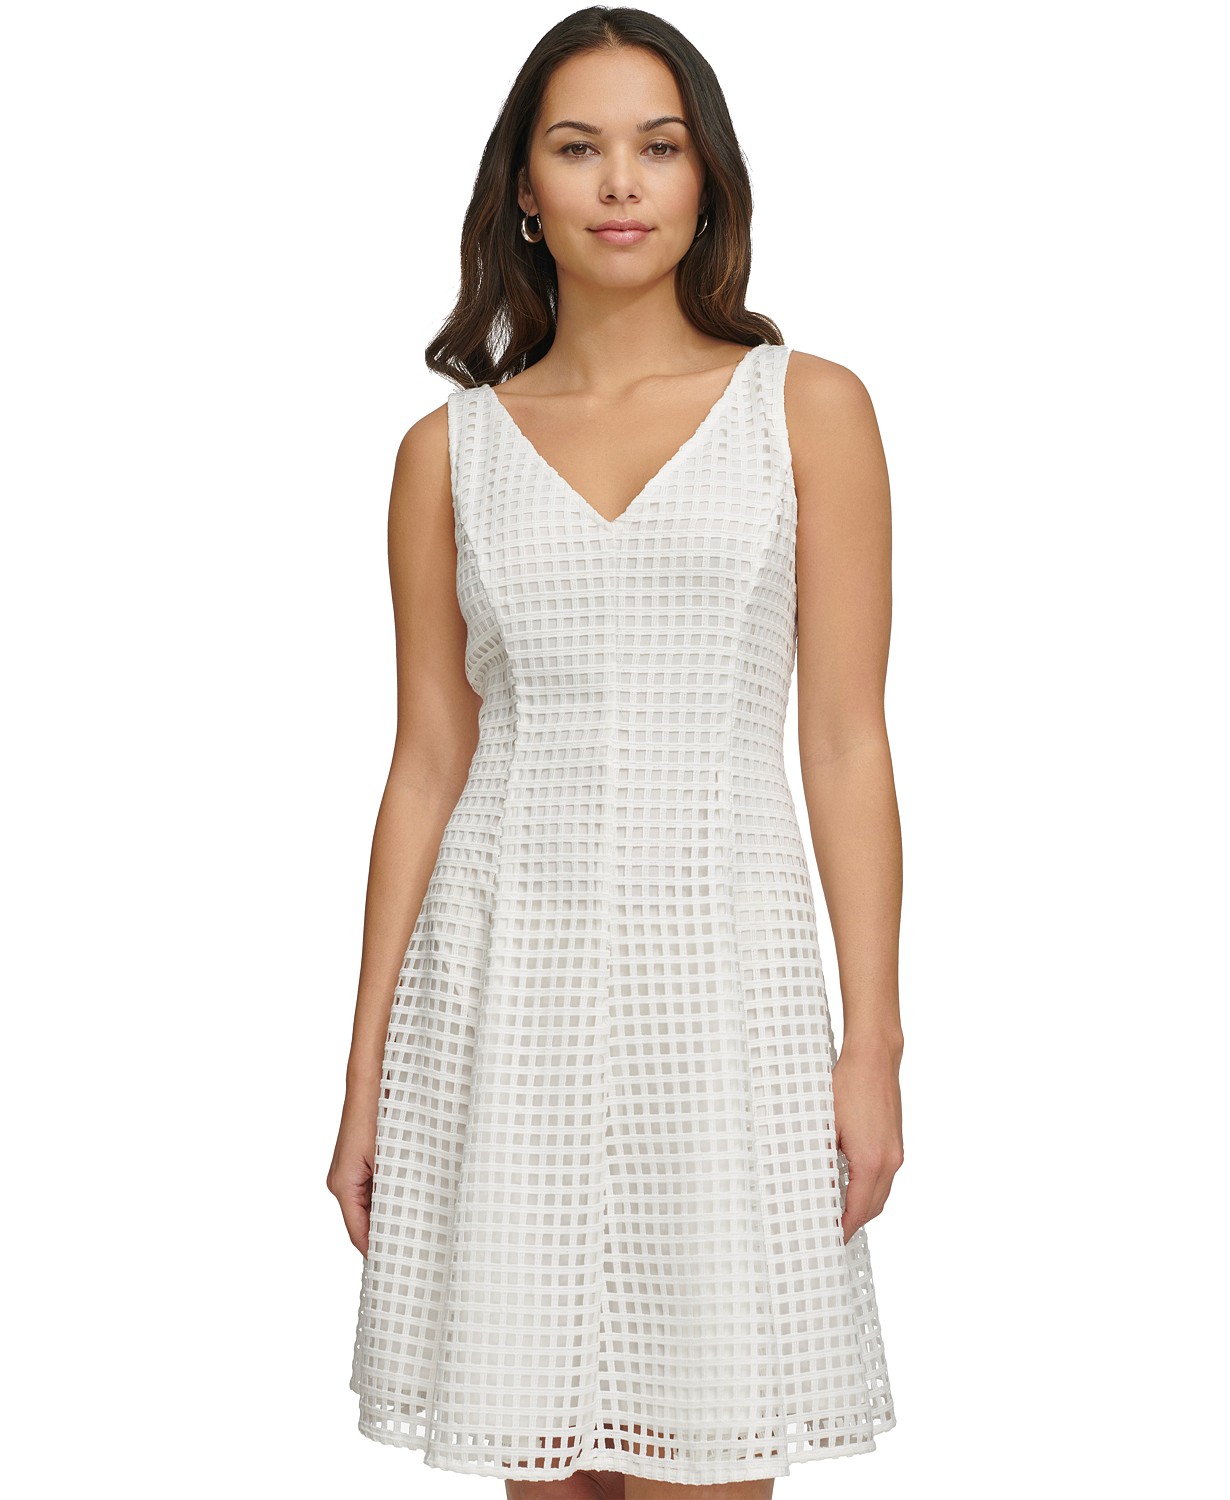 DKNY Womens Grid Cutout Sleeveless A-Line Dress